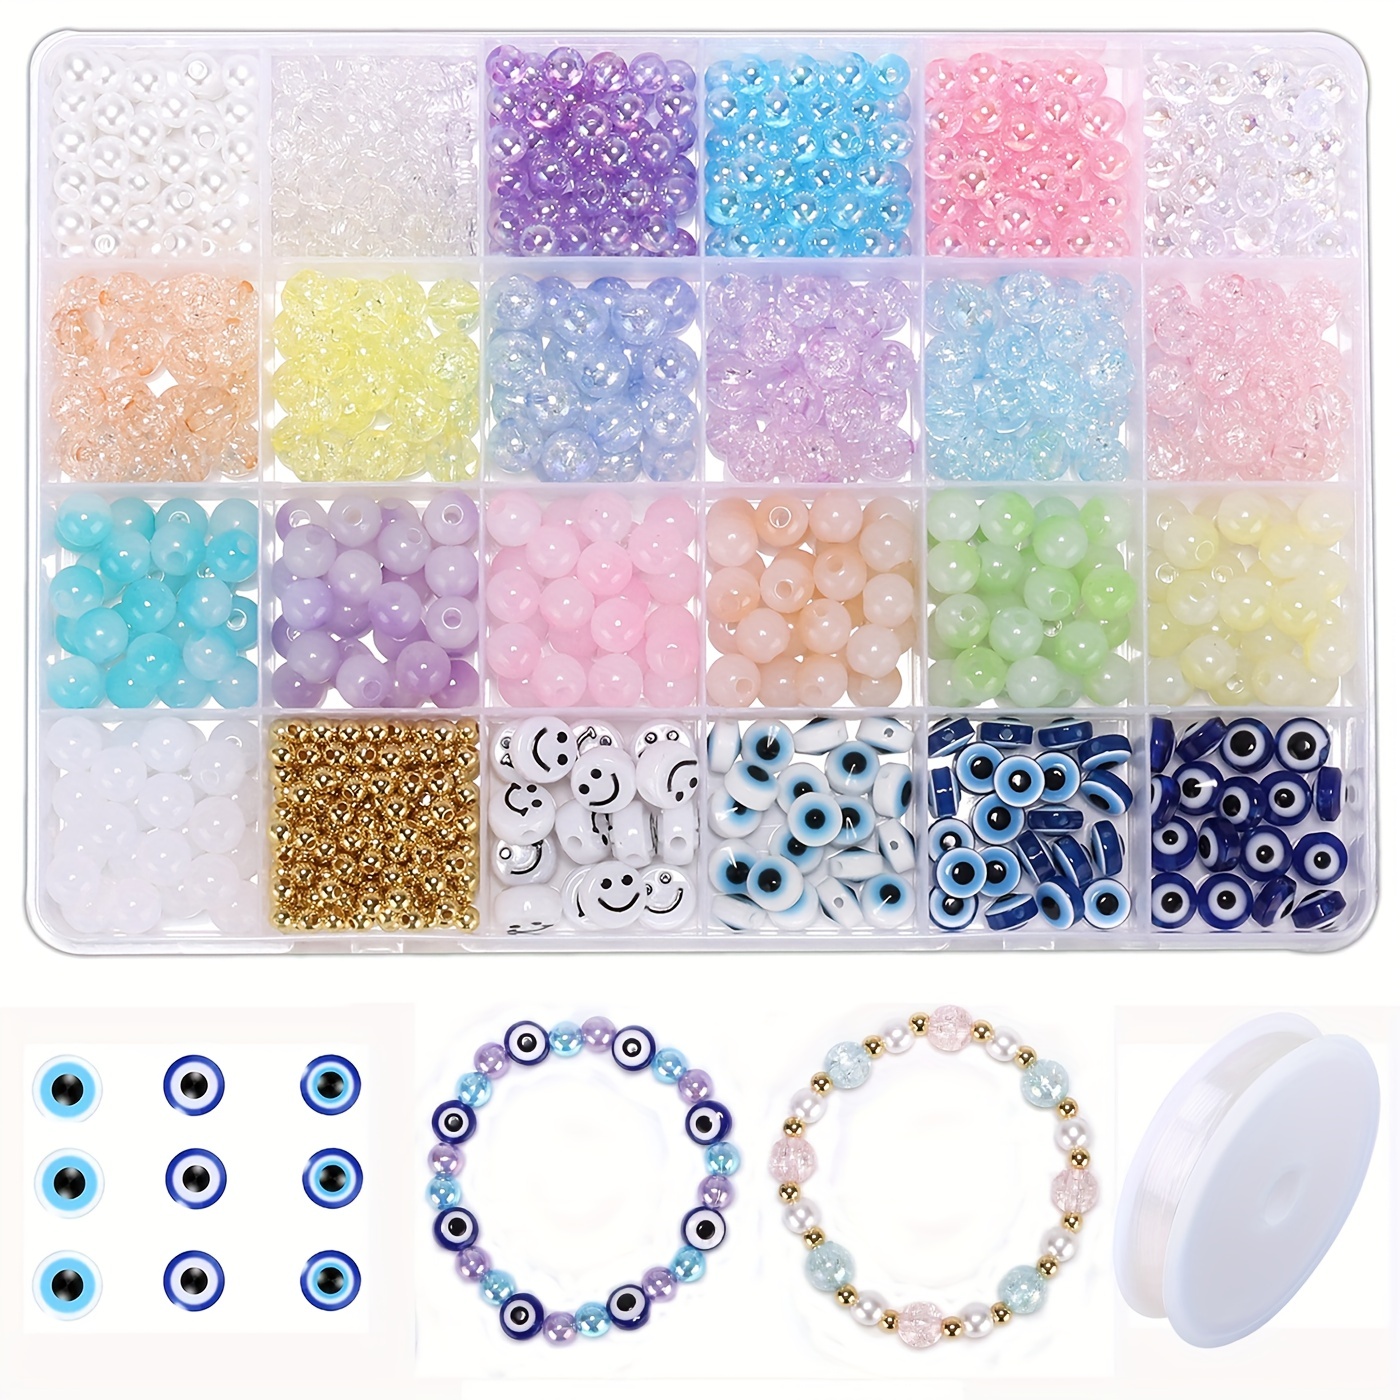 4600Pcs+ Toys Bracelet Making Kit -3100Pcs Beads for Charm Jewelry